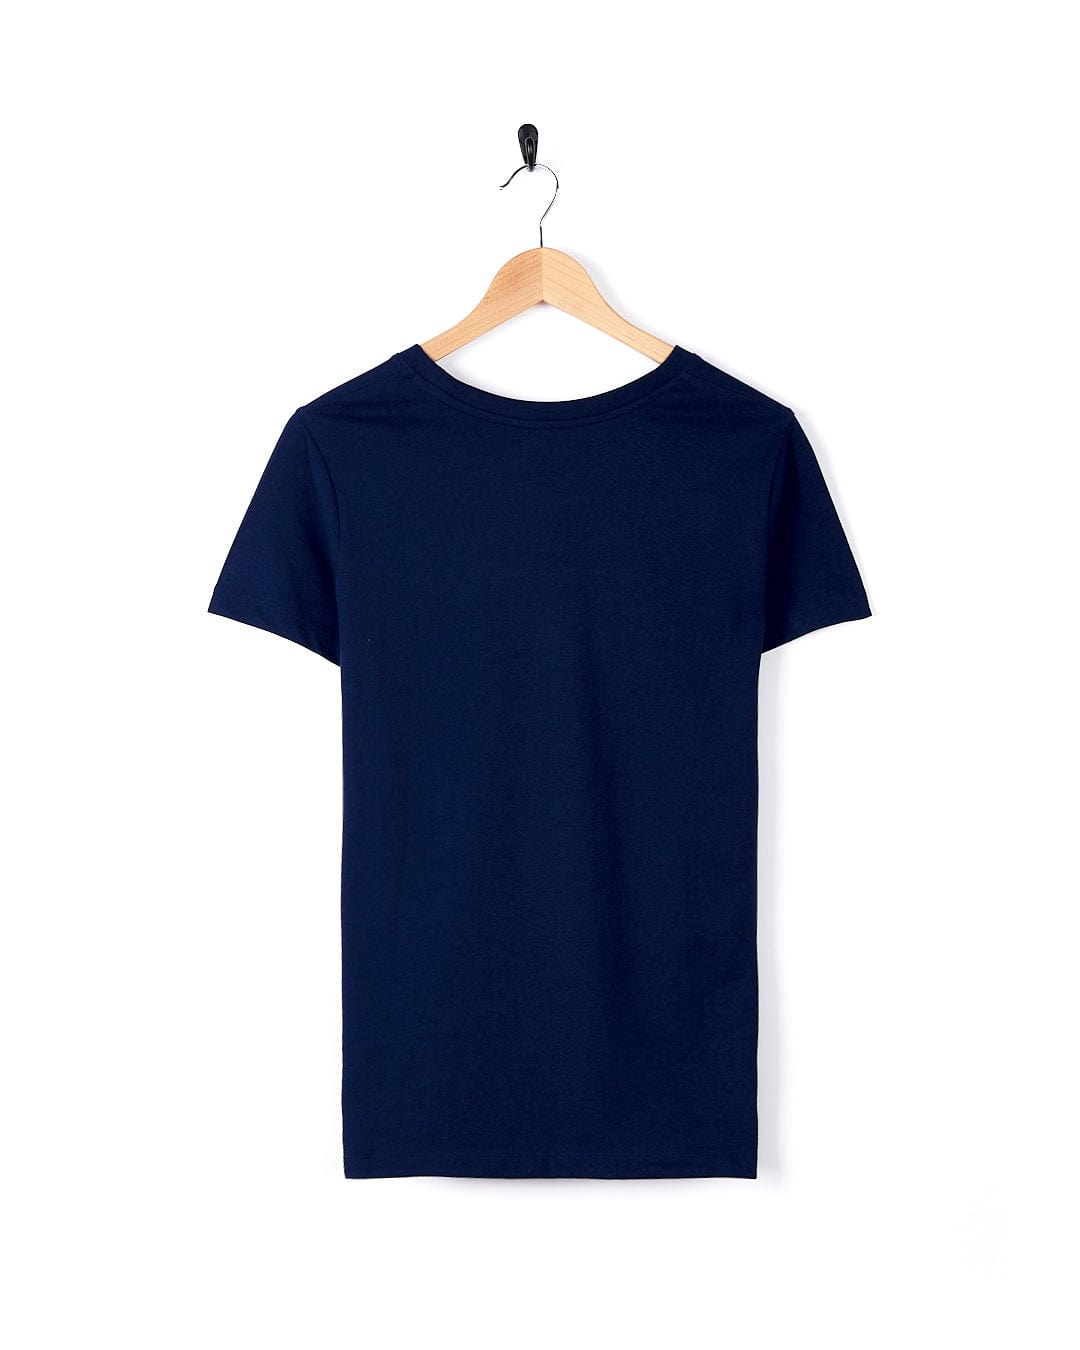 A Saltrock Retro Ribbon - Womens Short Sleeve T-Shirt - Dark Blue, a lightweight cotton blend t-shirt, hanging on a hanger.